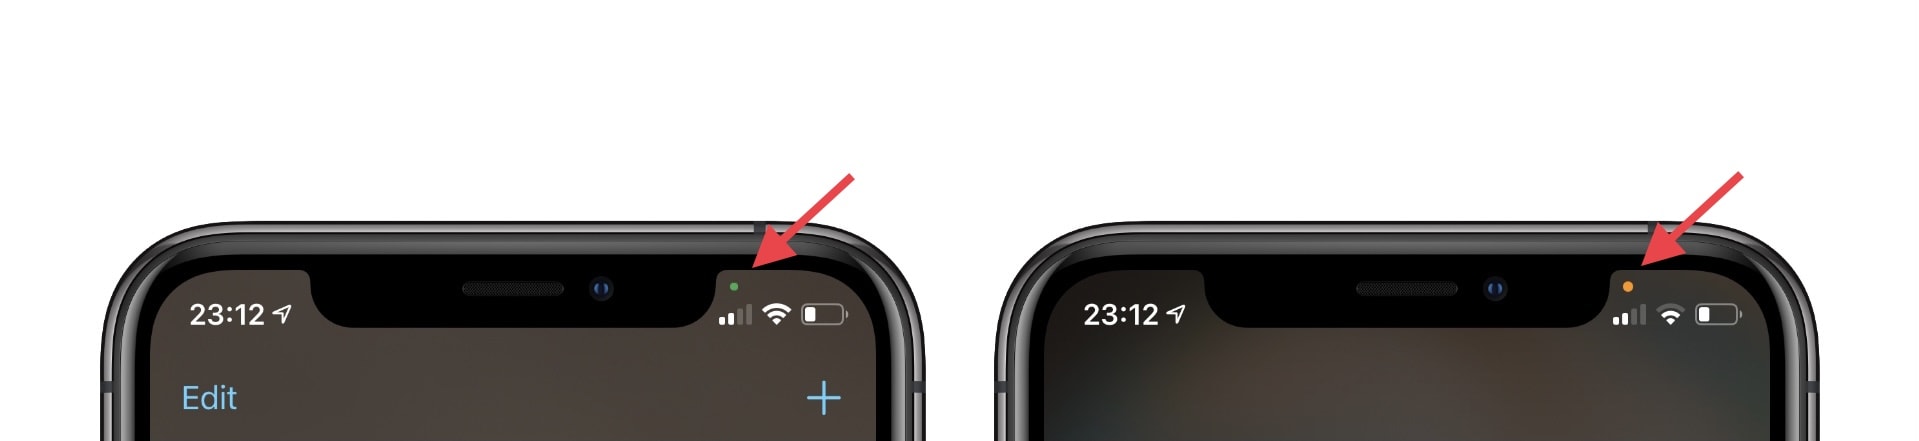 更新 iOS 14 後 iPhone 螢幕上的小綠點/橘點是什麼意思